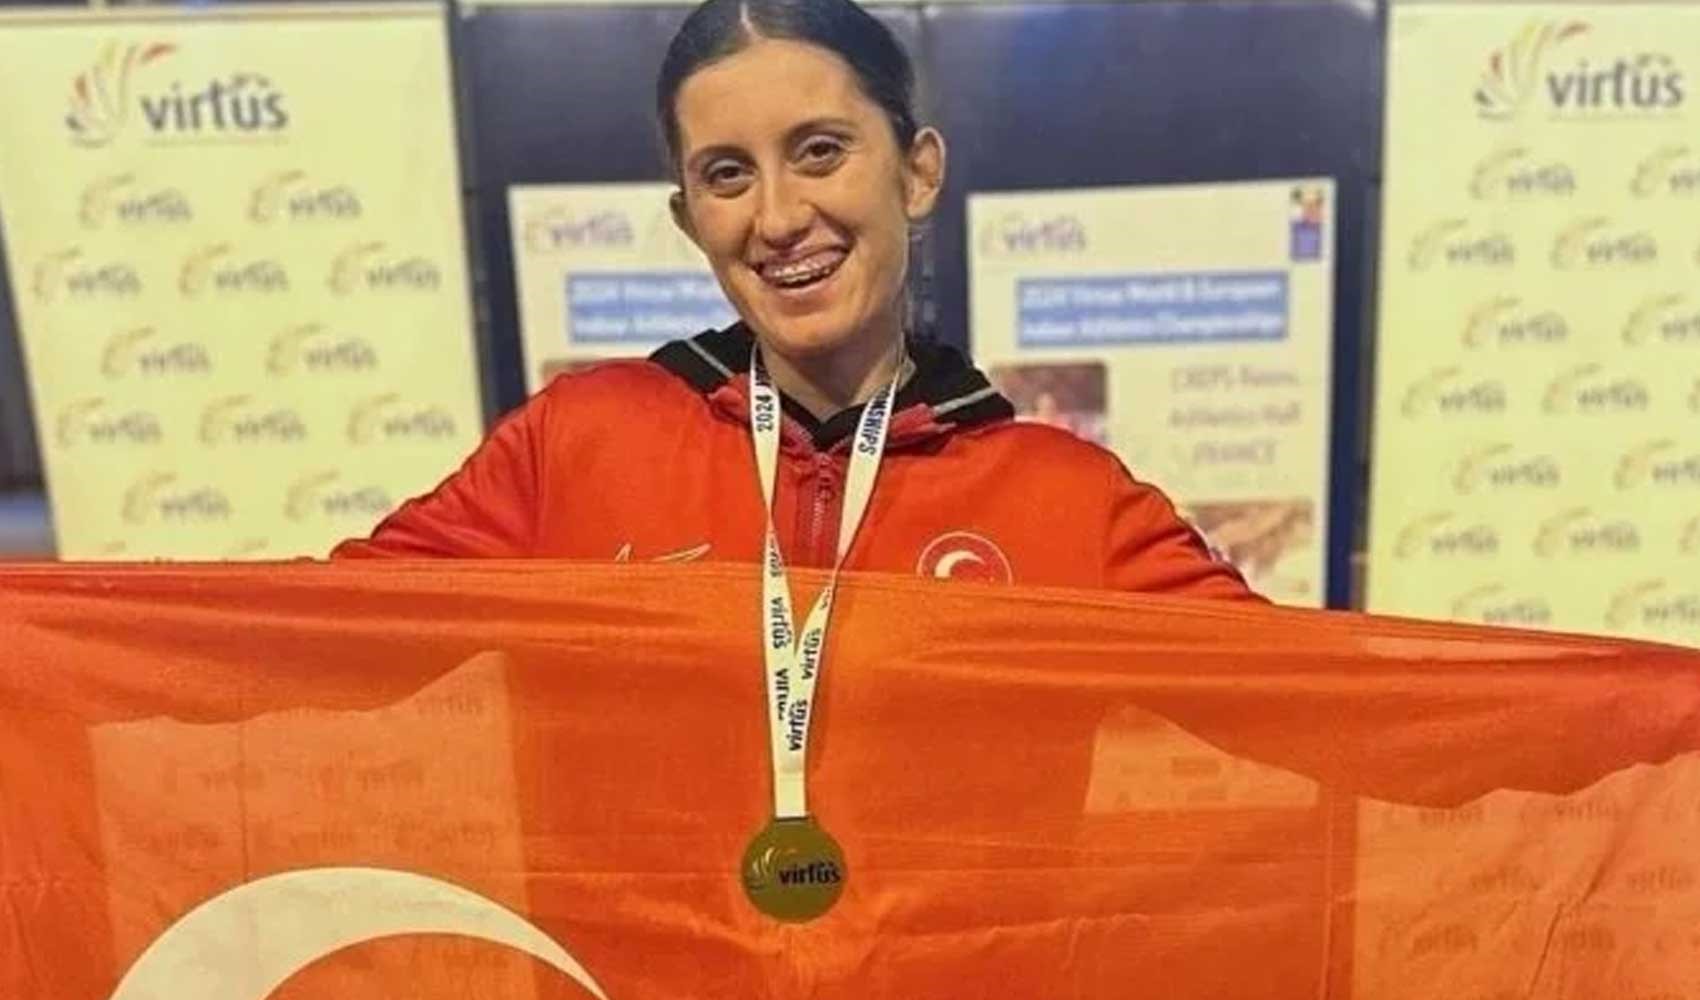 Fatma Damla Altın, dünya şampiyonu!